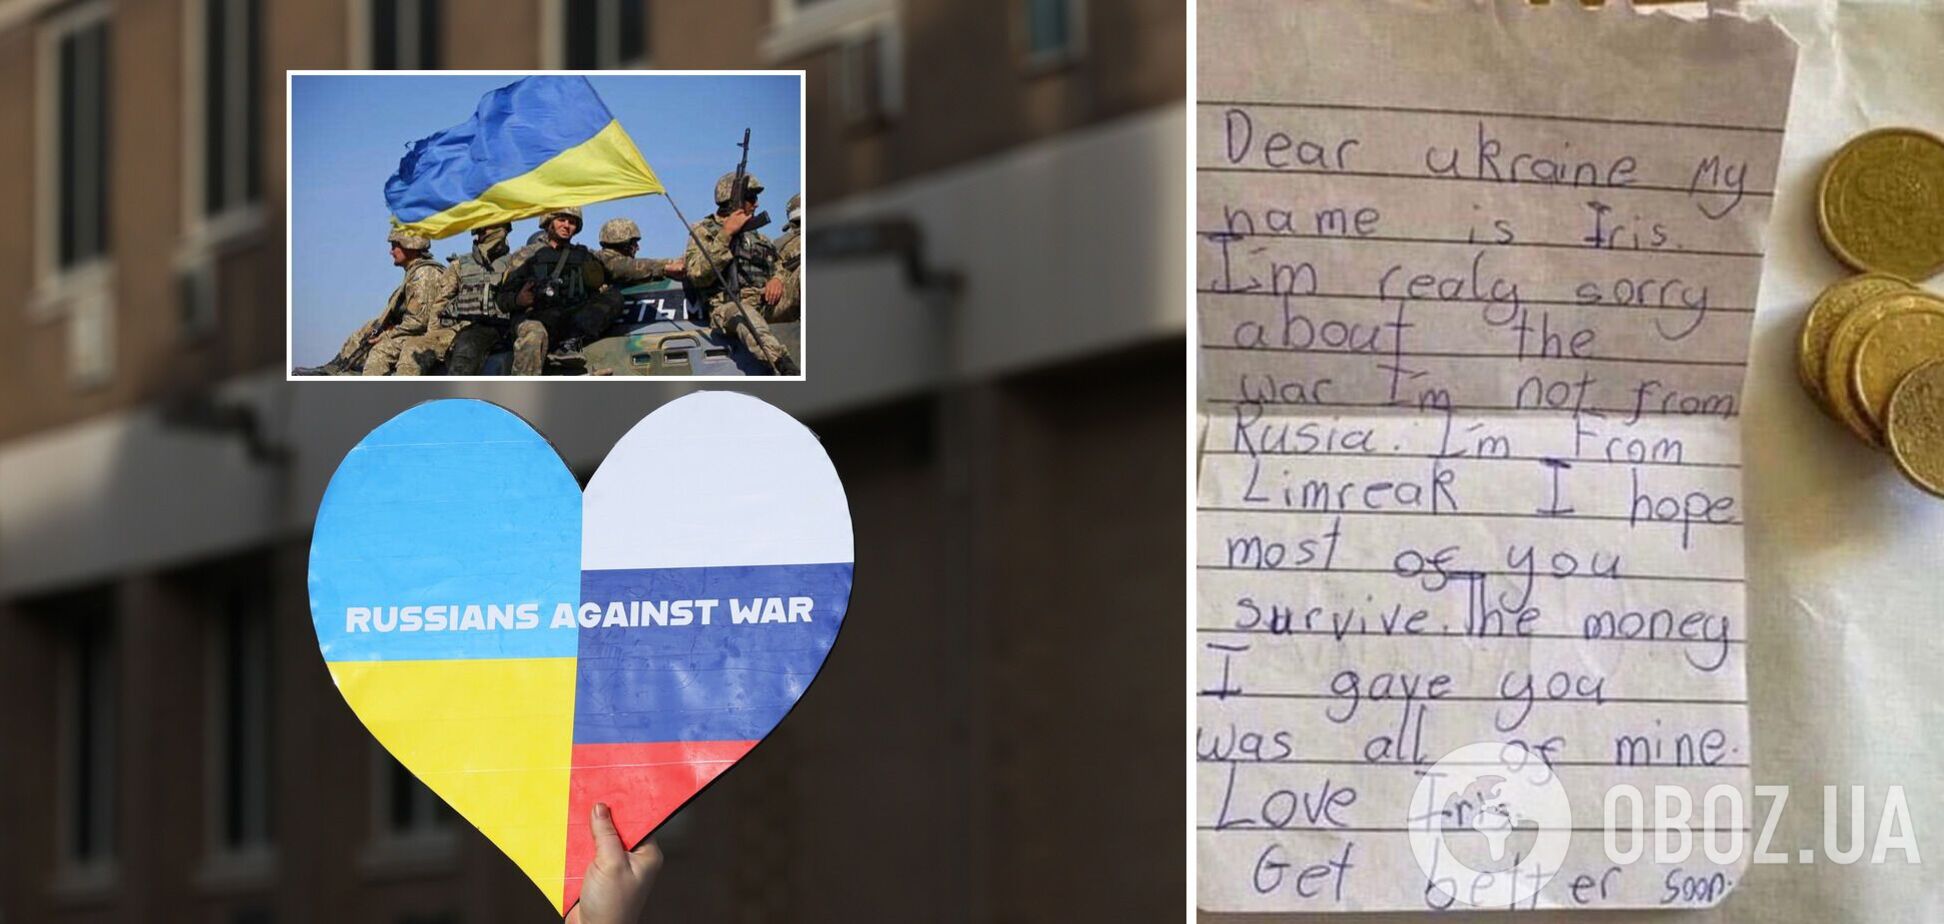 8-летняя девочка из Ирландии собрала все свои деньги и попросила передать их Украине. Фото